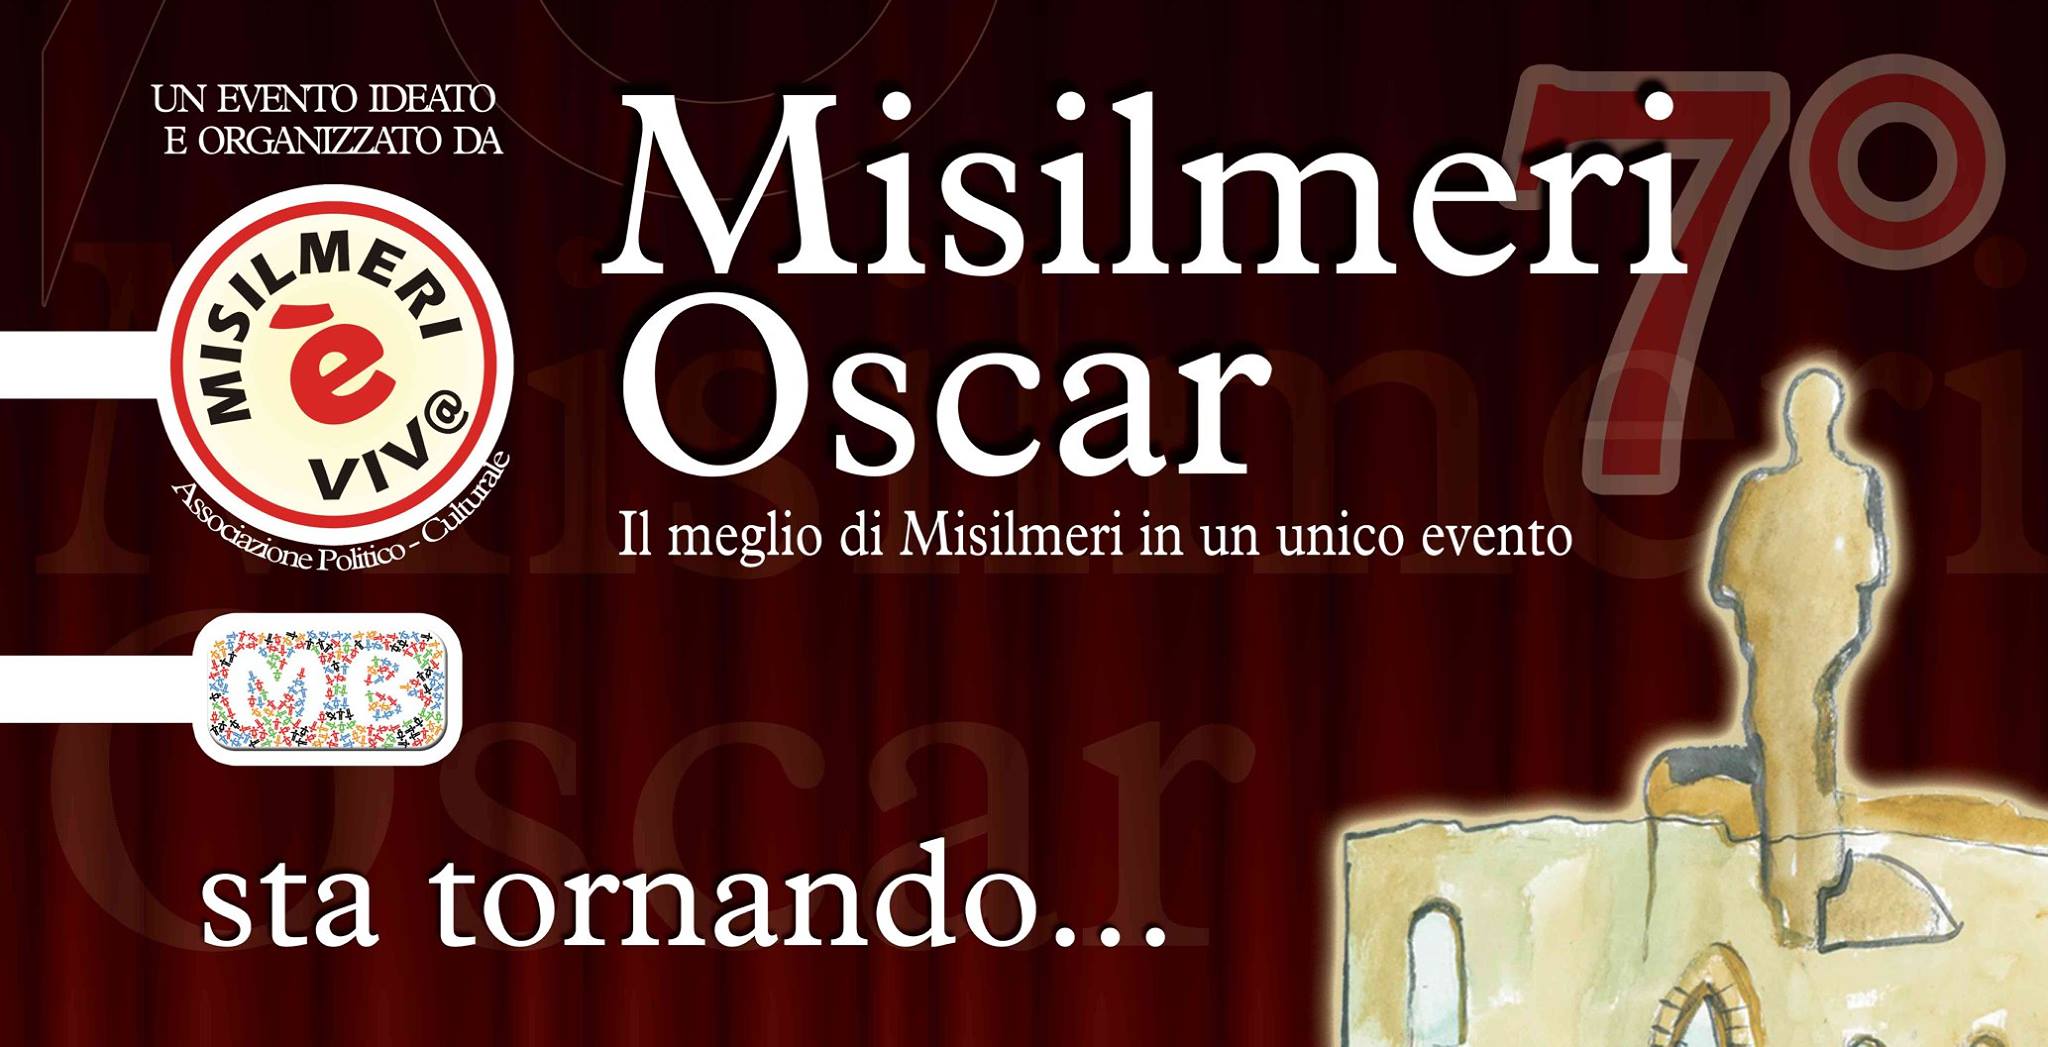 7° edizione di Misilmeri Oscar, ecco le prime nomination